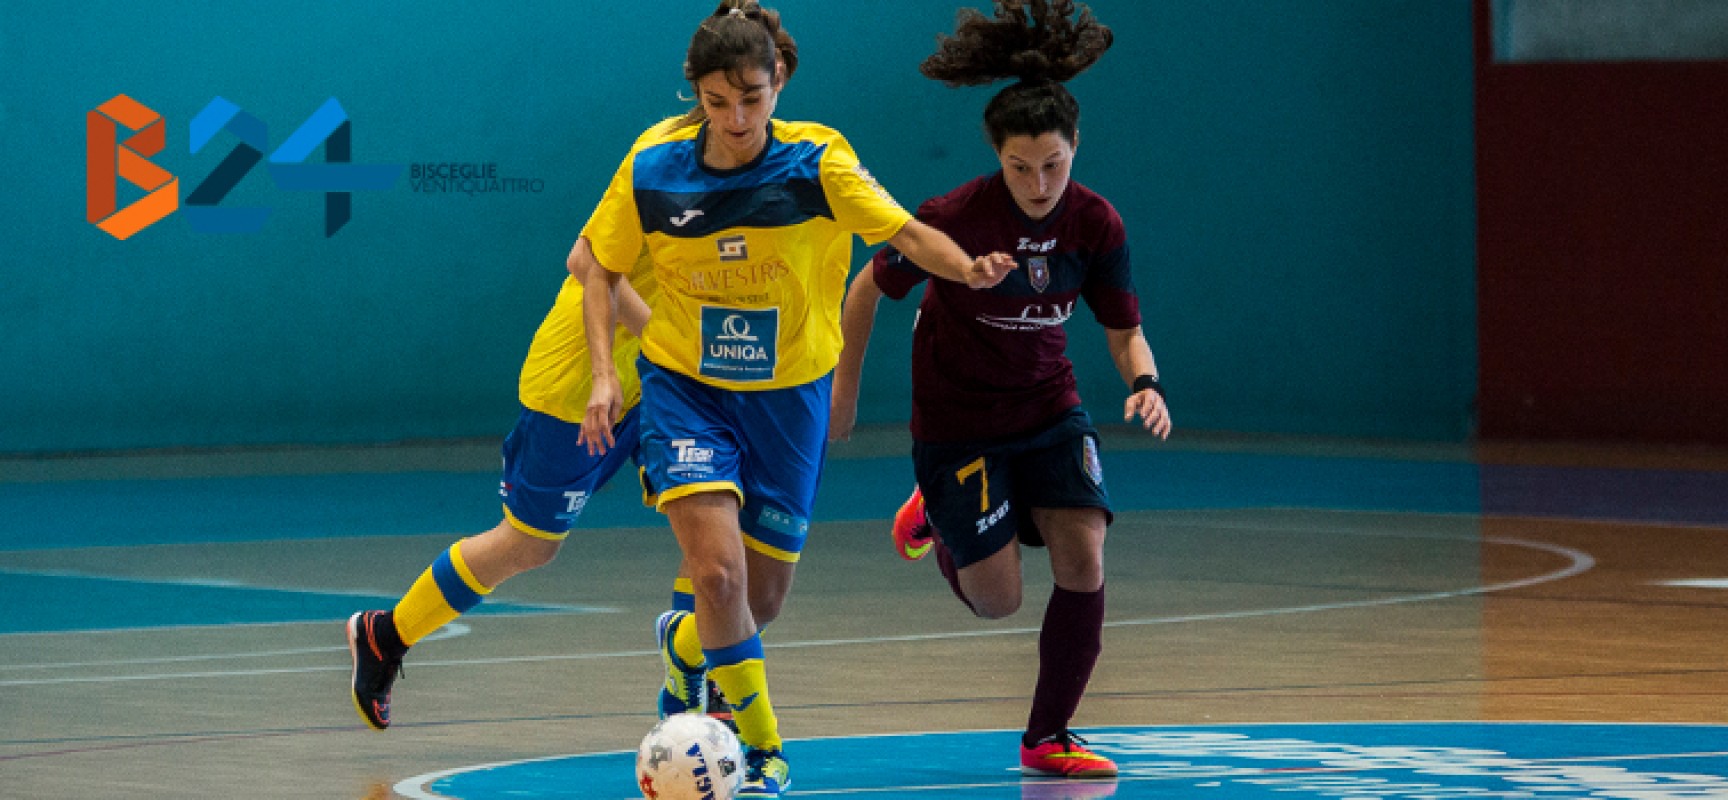 Futsal Bisceglie femminile, 4 gol a Policoro e terzo posto / CLASSIFICA